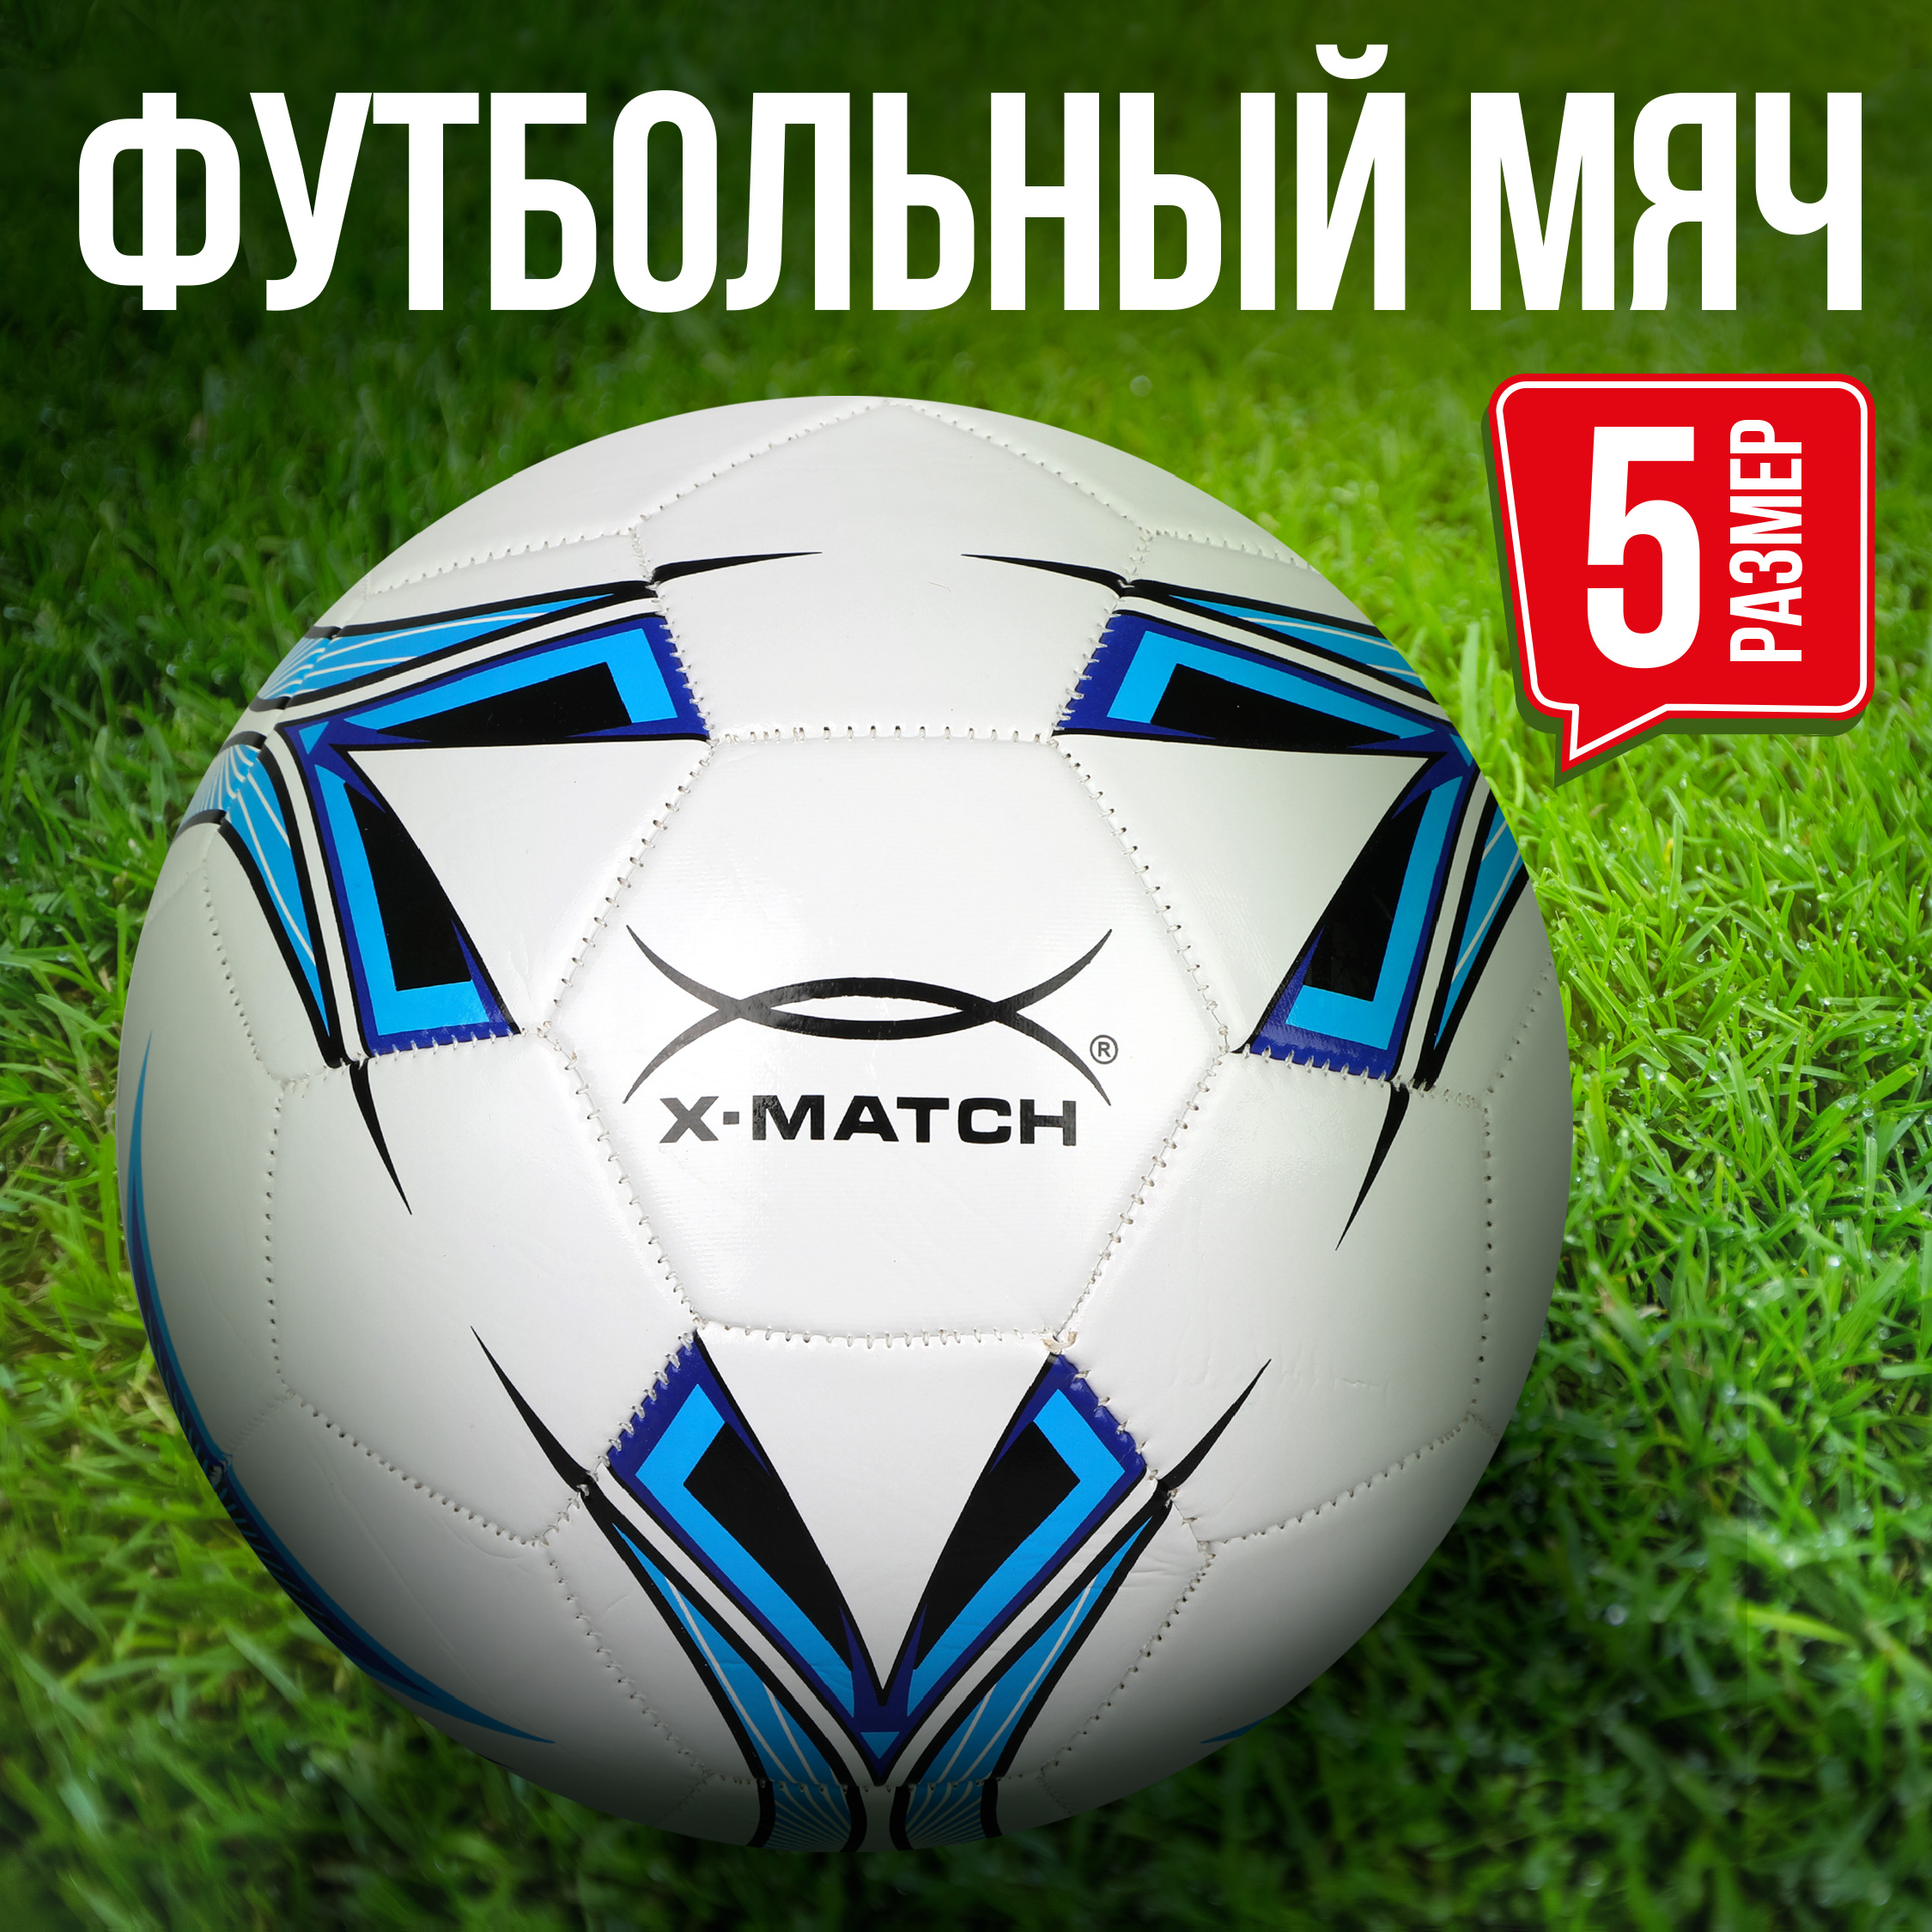 Мяч X-Match футбольный размер 5 слой 1 - фото 1